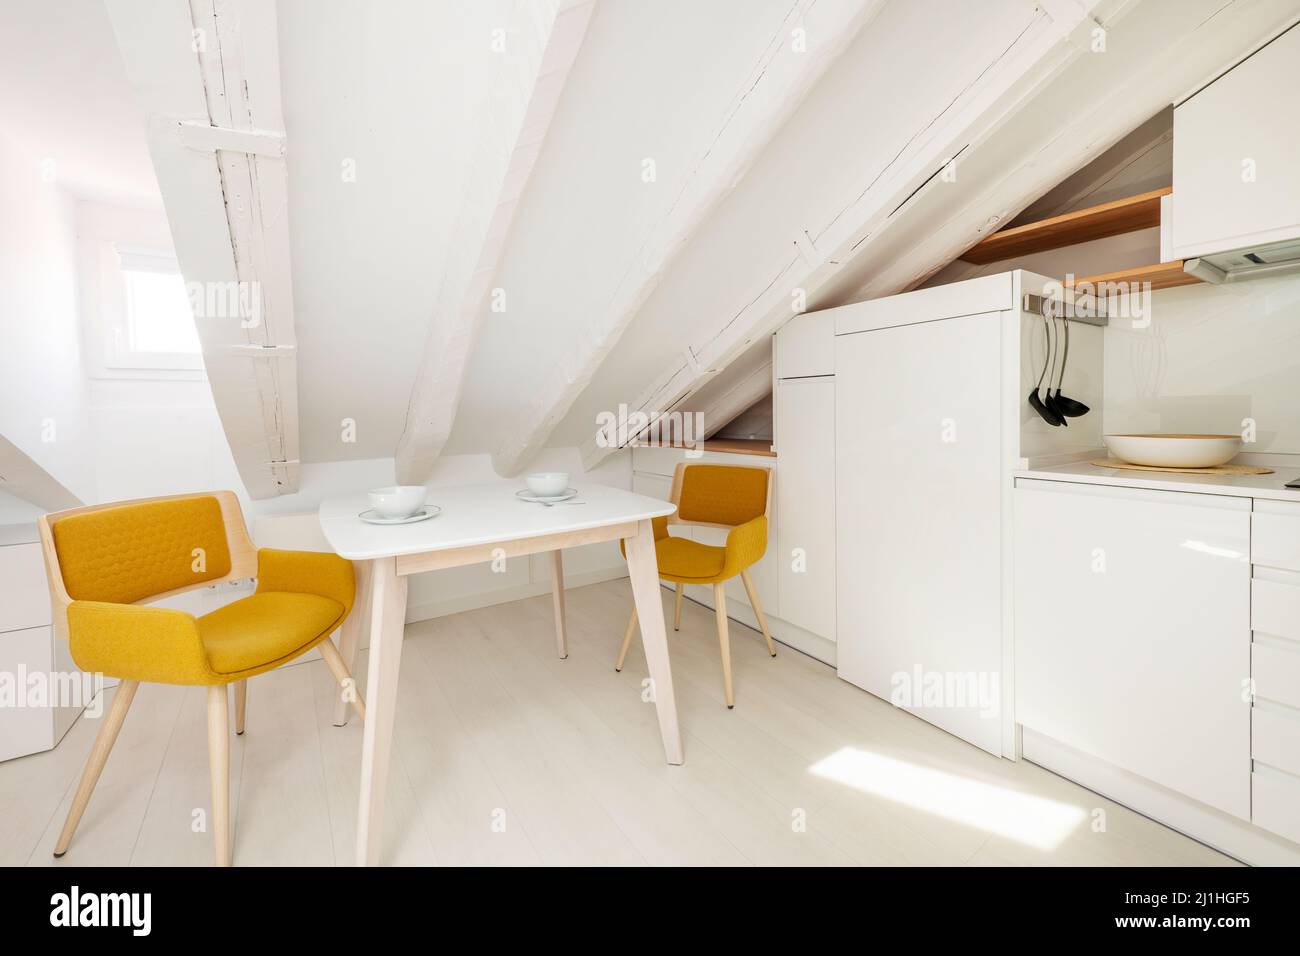 Esstisch neben weißer Küche mit Holzregalen in Dachgeschoss-Wohnung Stockfoto